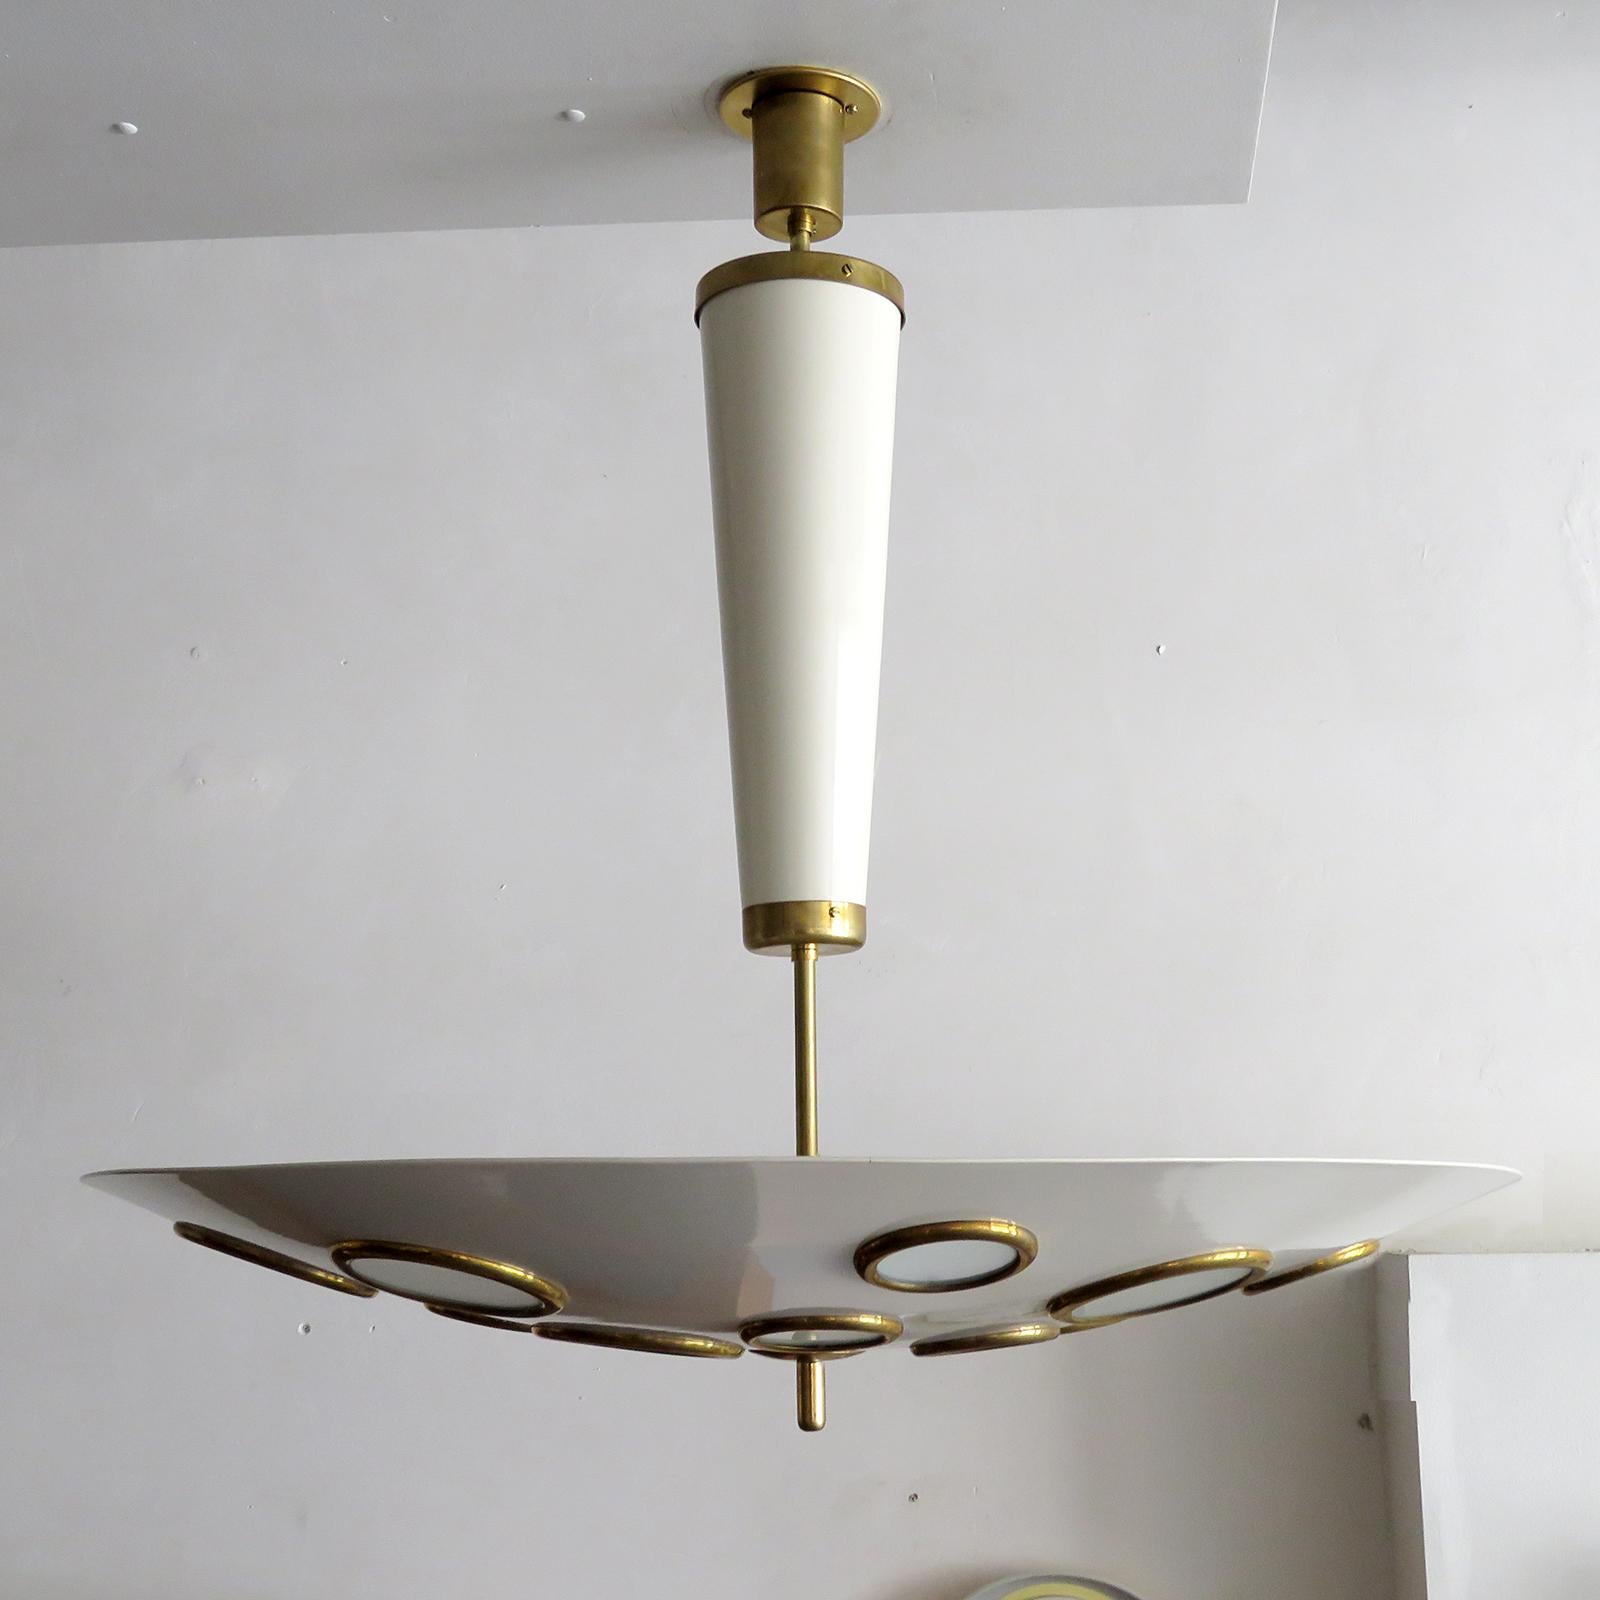 Superbes lampes suspendues italiennes par Lumen Milano, 1950 en laiton et métal émaillé couleur coquille d'œuf, l'abat-jour circulaire suspendu de grande taille est perforé avec des diffuseurs en verre dépoli cerclés de laiton de différentes